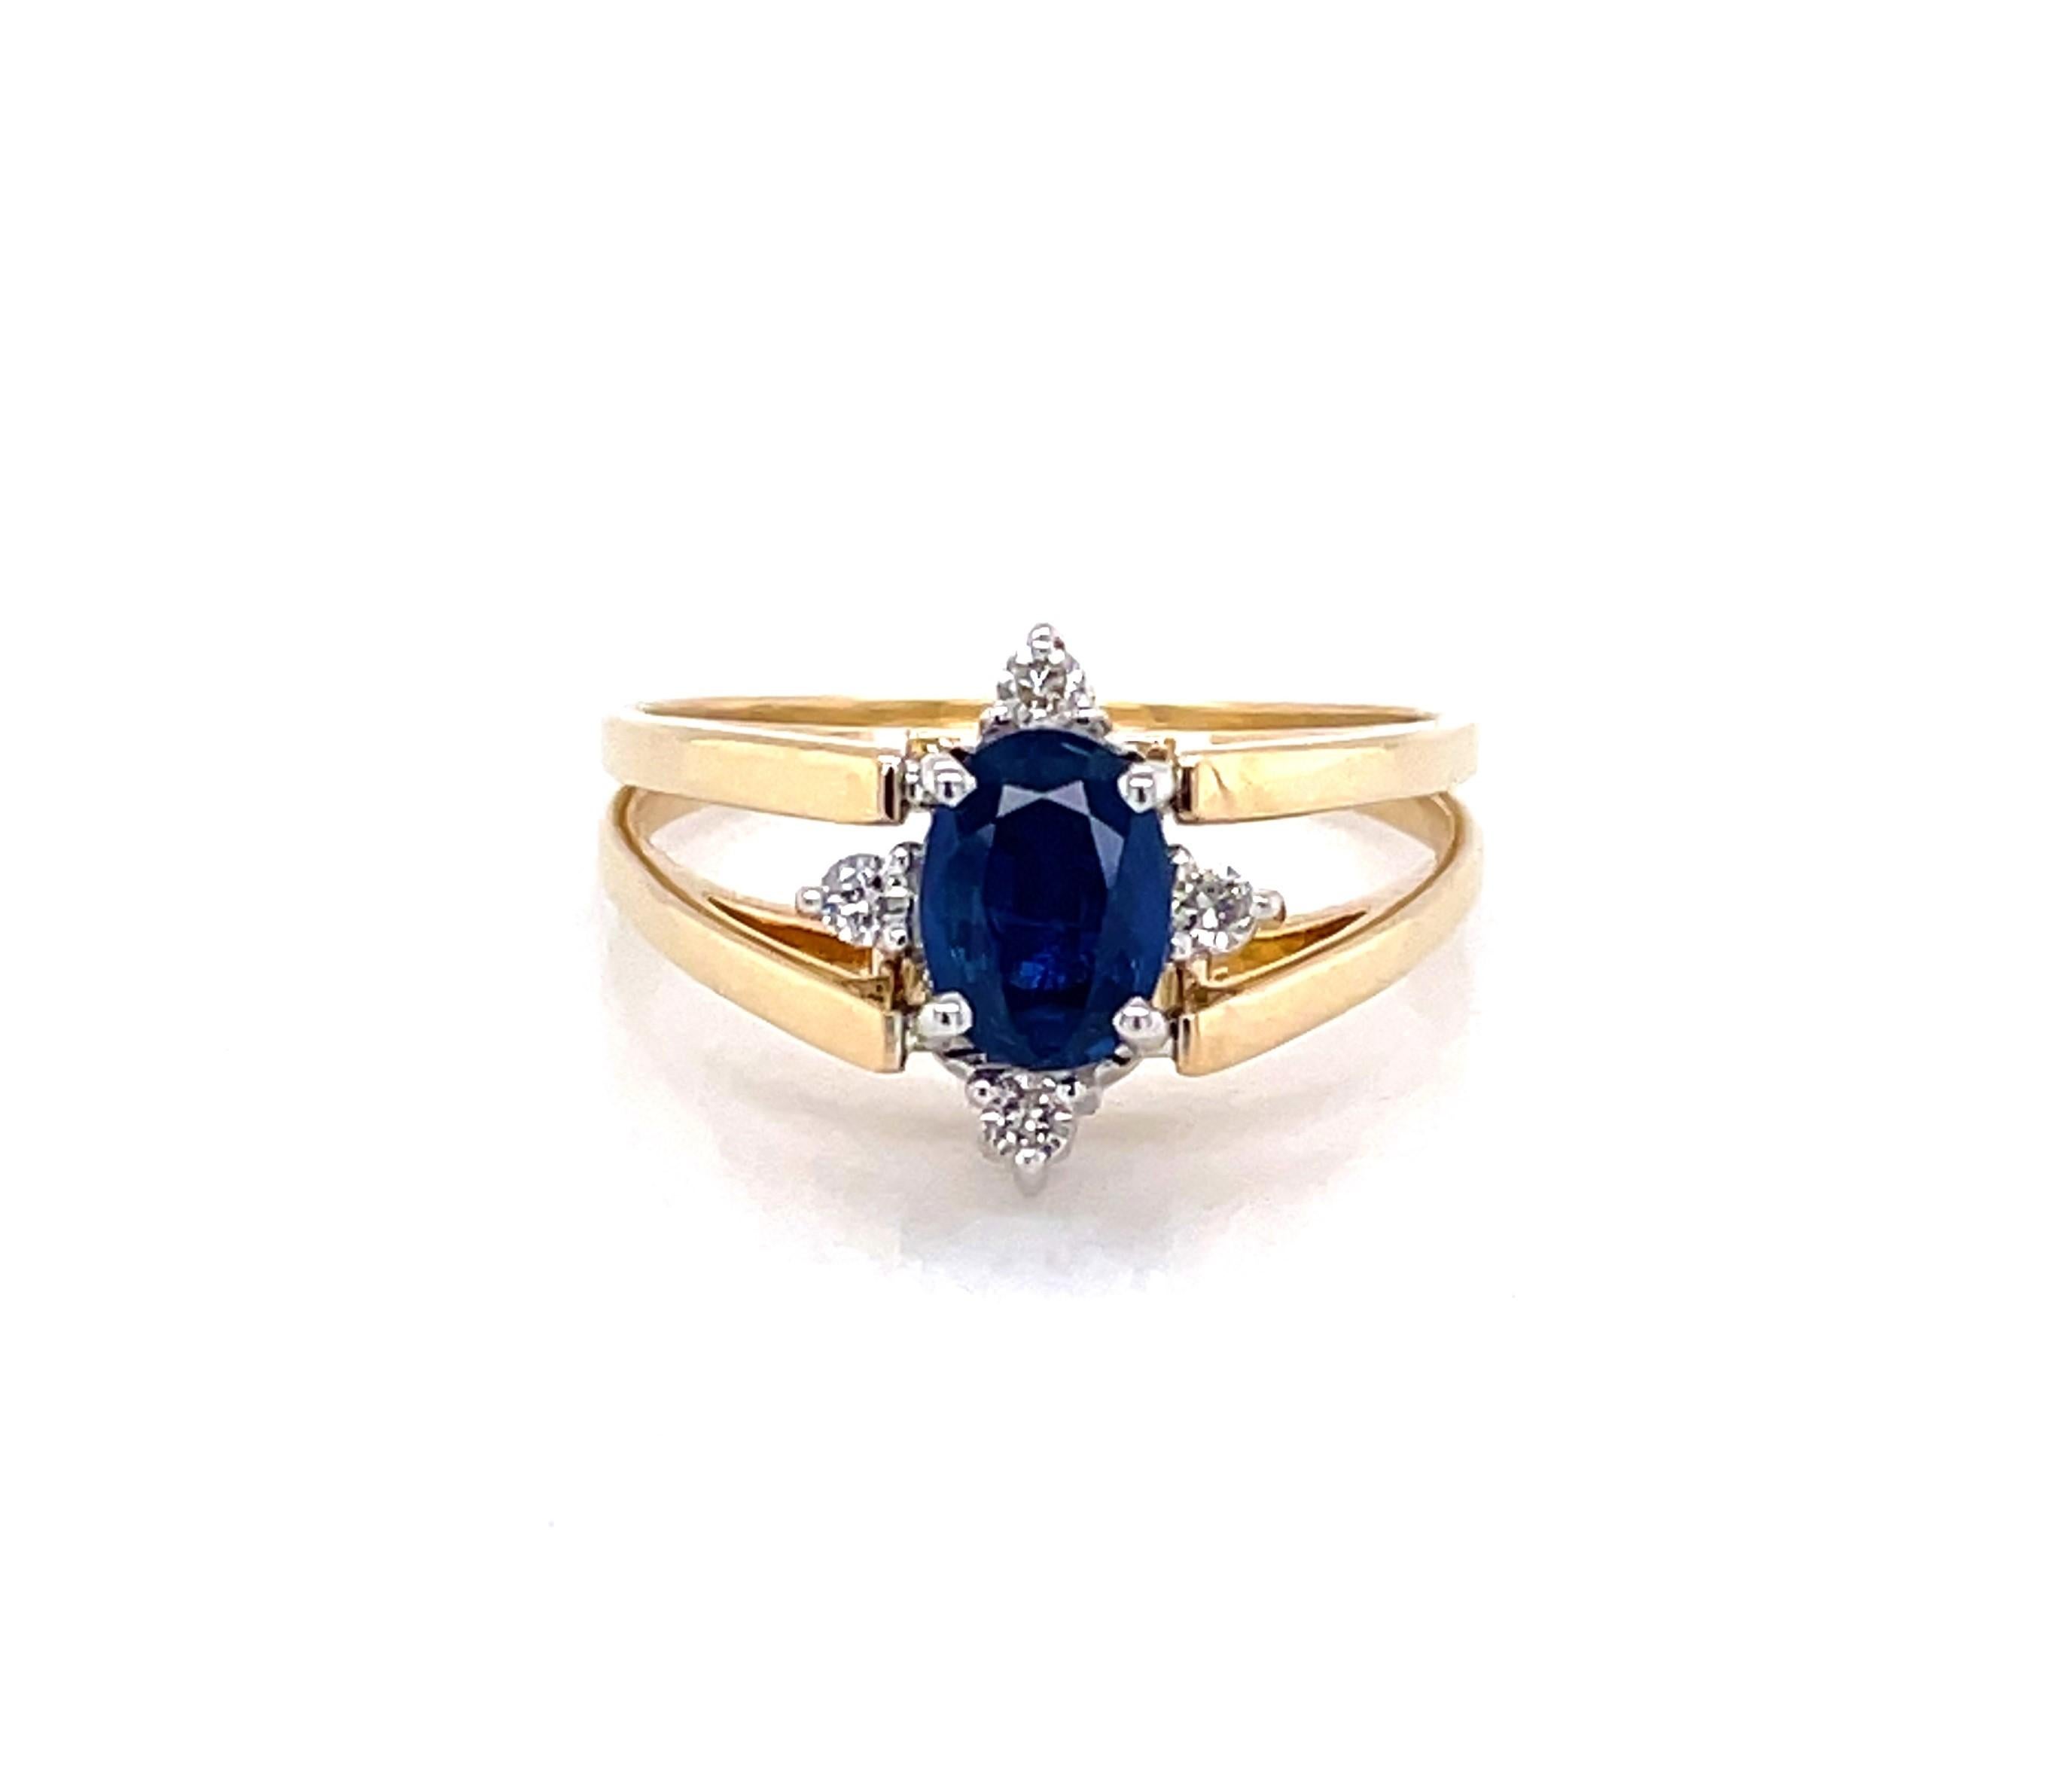 Un saphir bleu vif ou une grappe de diamants blancs étincelants, c'est vous qui choisissez. Cette fabuleuse bague flip présente les deux aspects sur demande. Offrant un saphir ovale à facettes de 0,75 carat (6,5 x 4 mm) accentué par quatre diamants